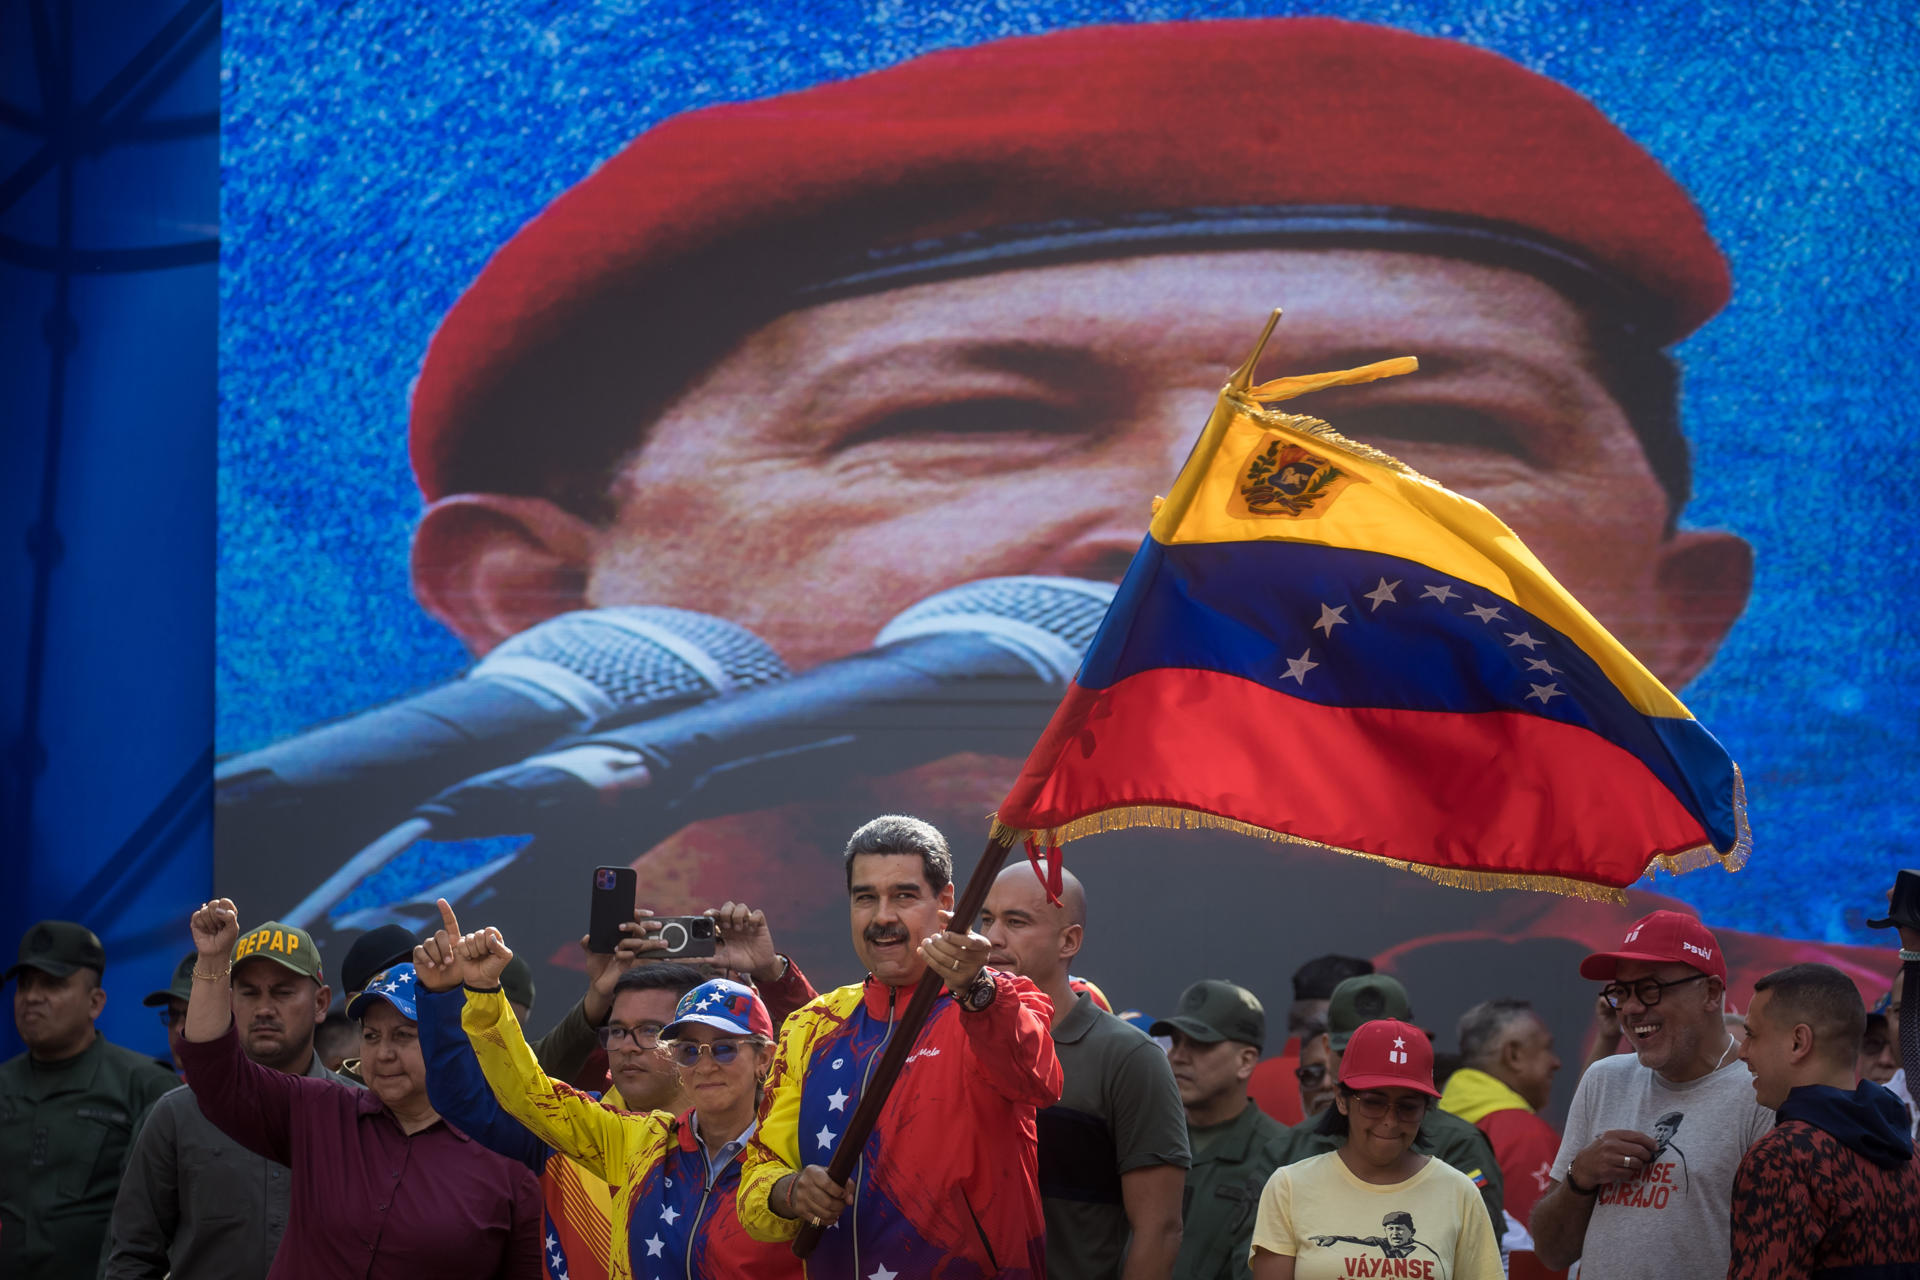 Postulan oficialmente al dictador Maduro como candidato presidencial